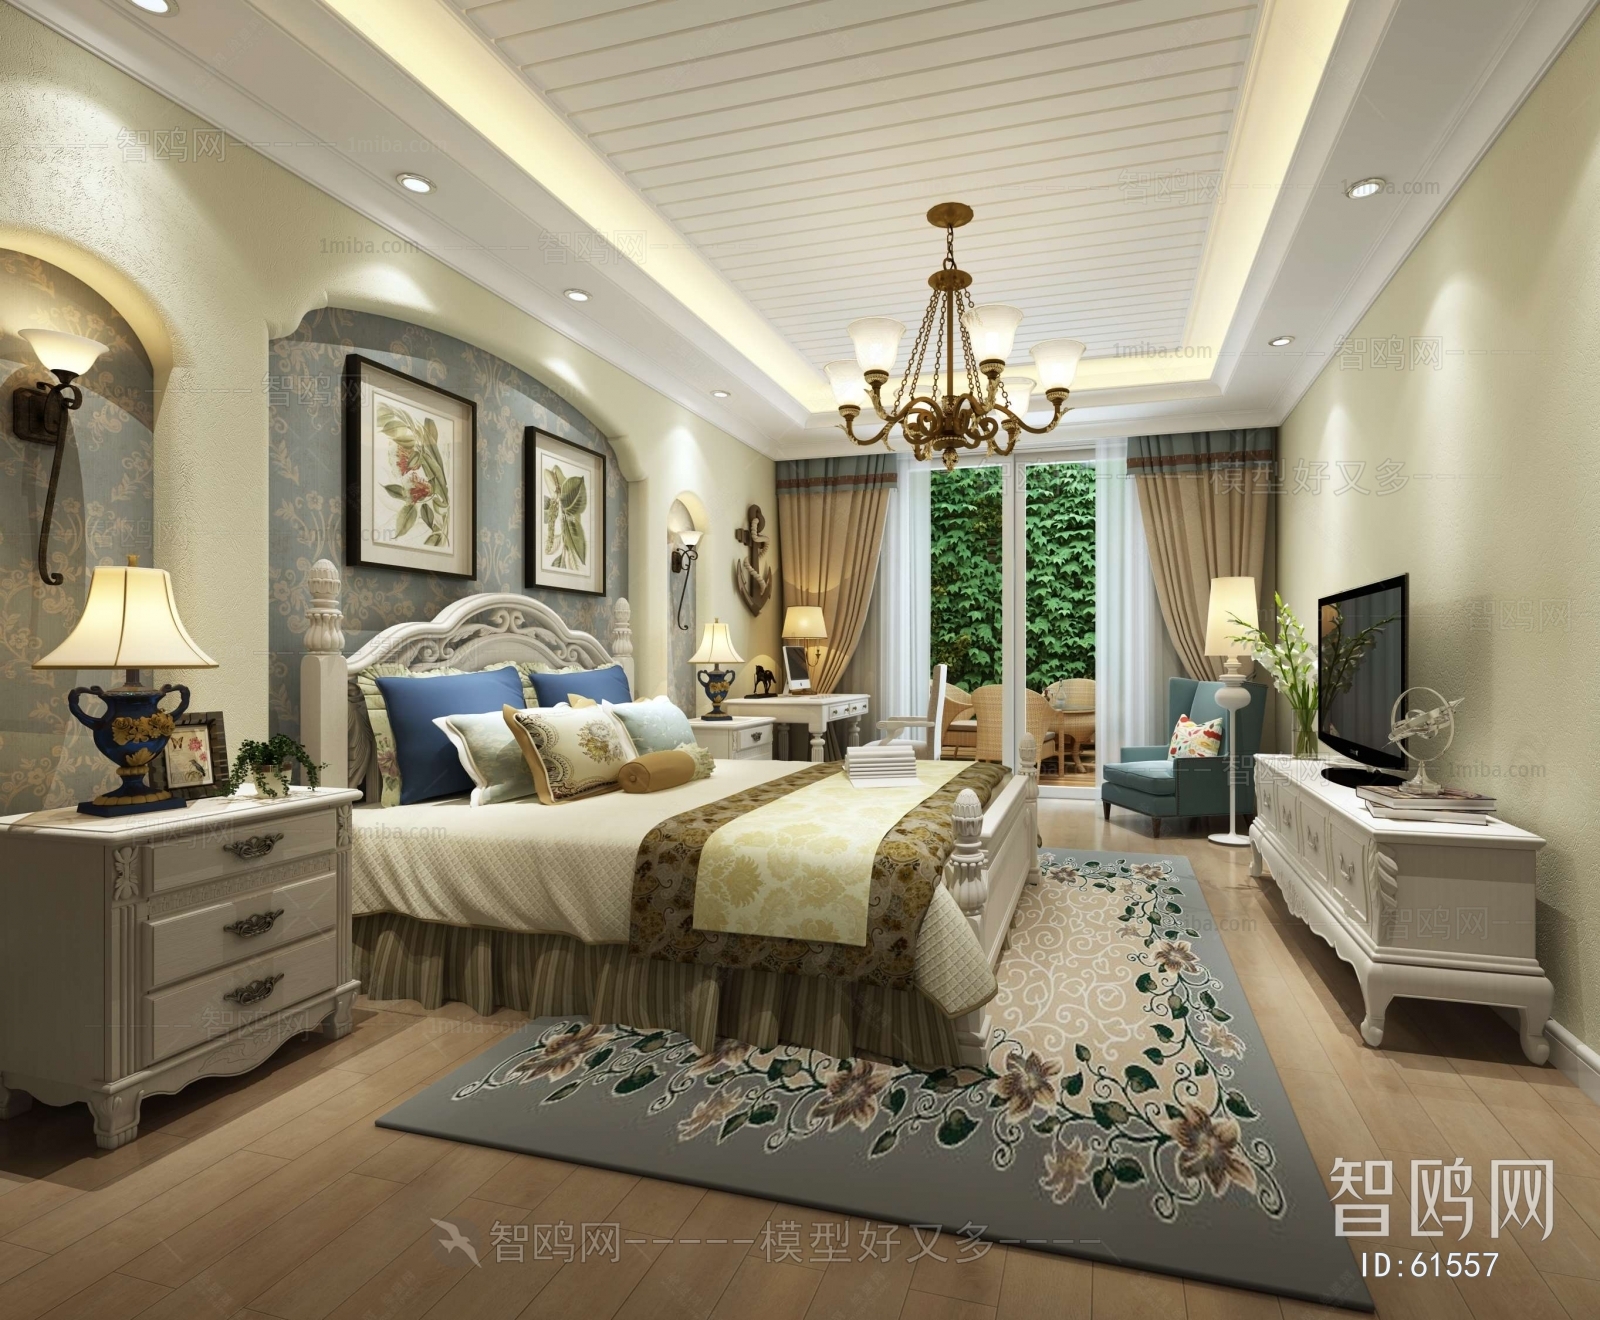 Idyllic Style Bedroom